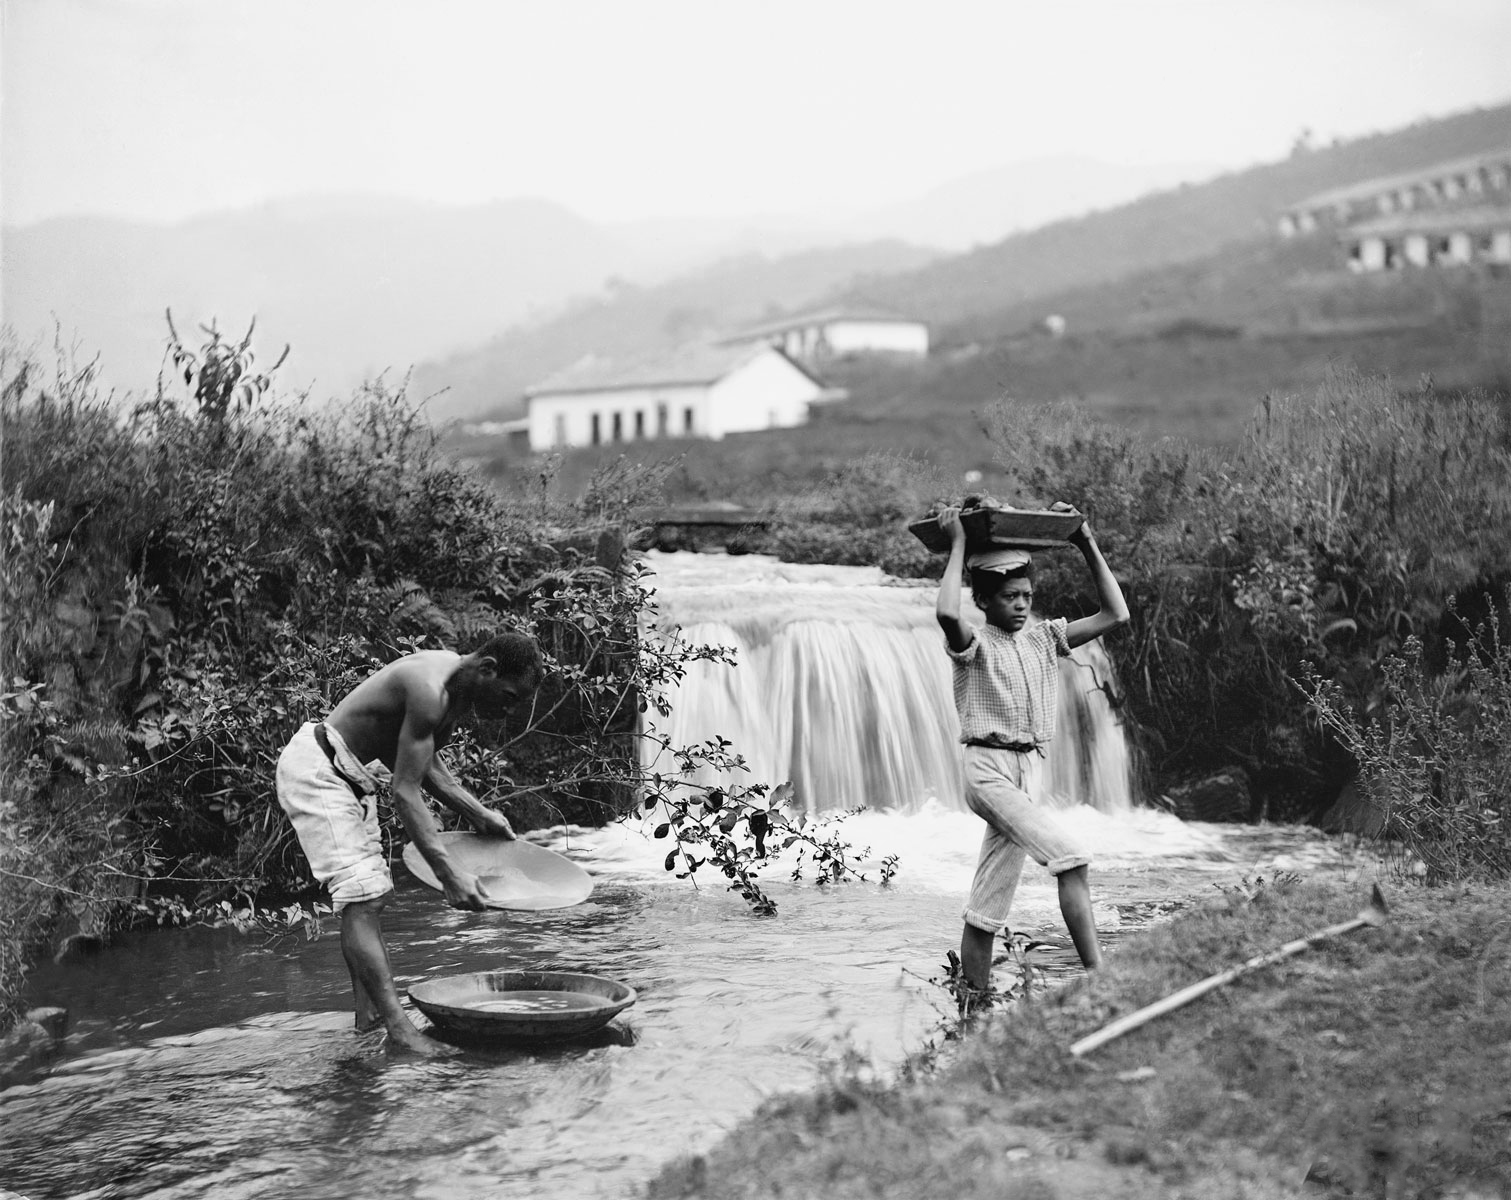 Washing of Gold, c. 1880